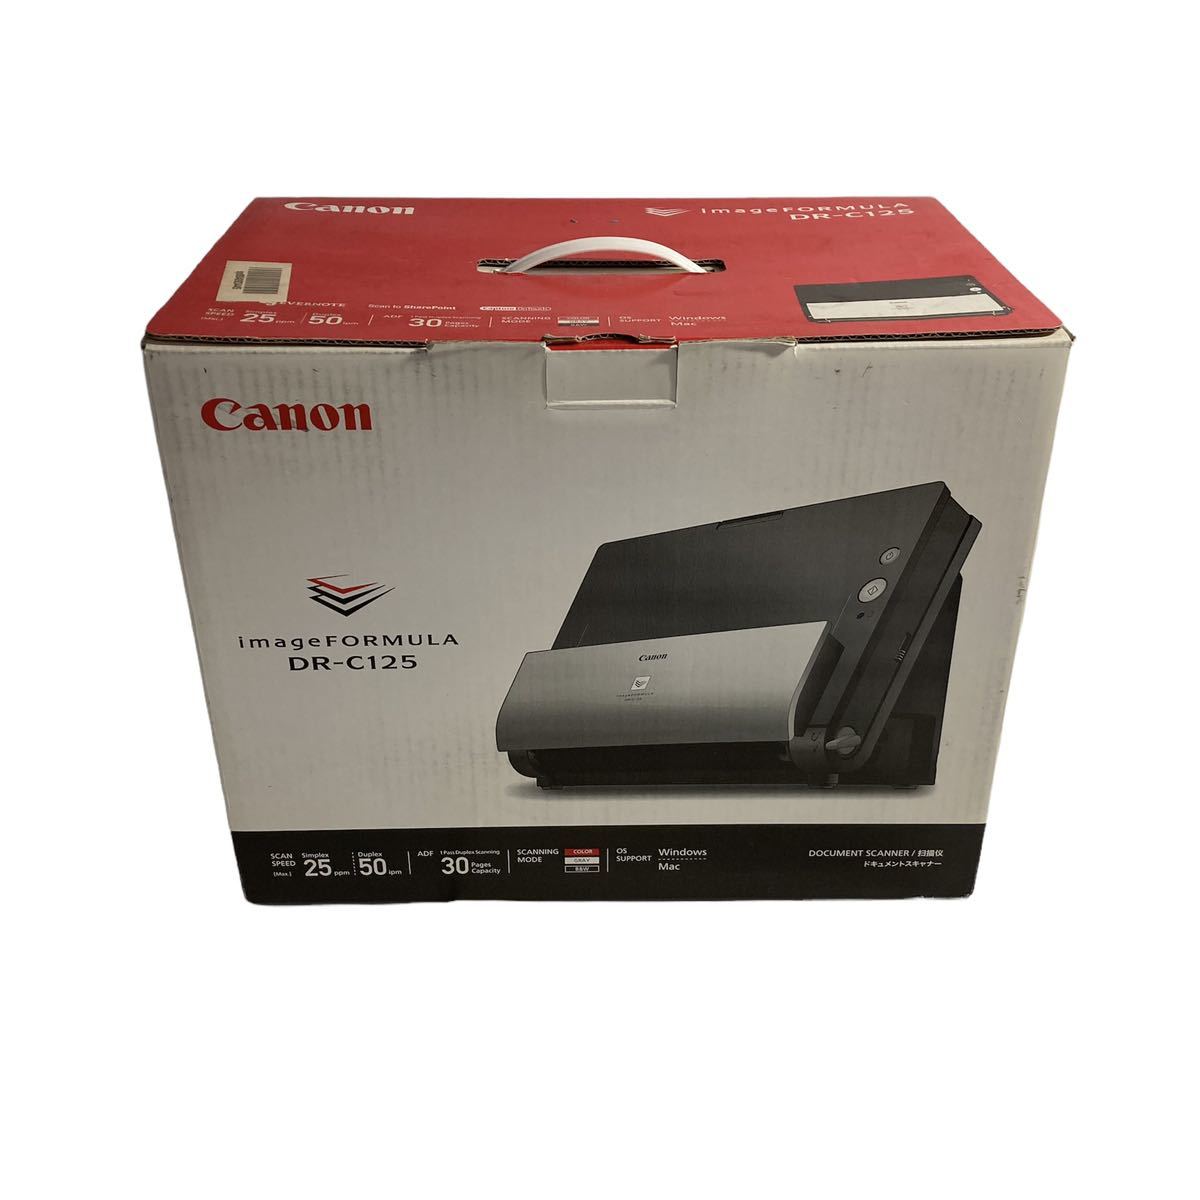 商店 <br>Canon 3801B001 A4ドキュメントスキャナー imageFORMULA DR-6010C<br>